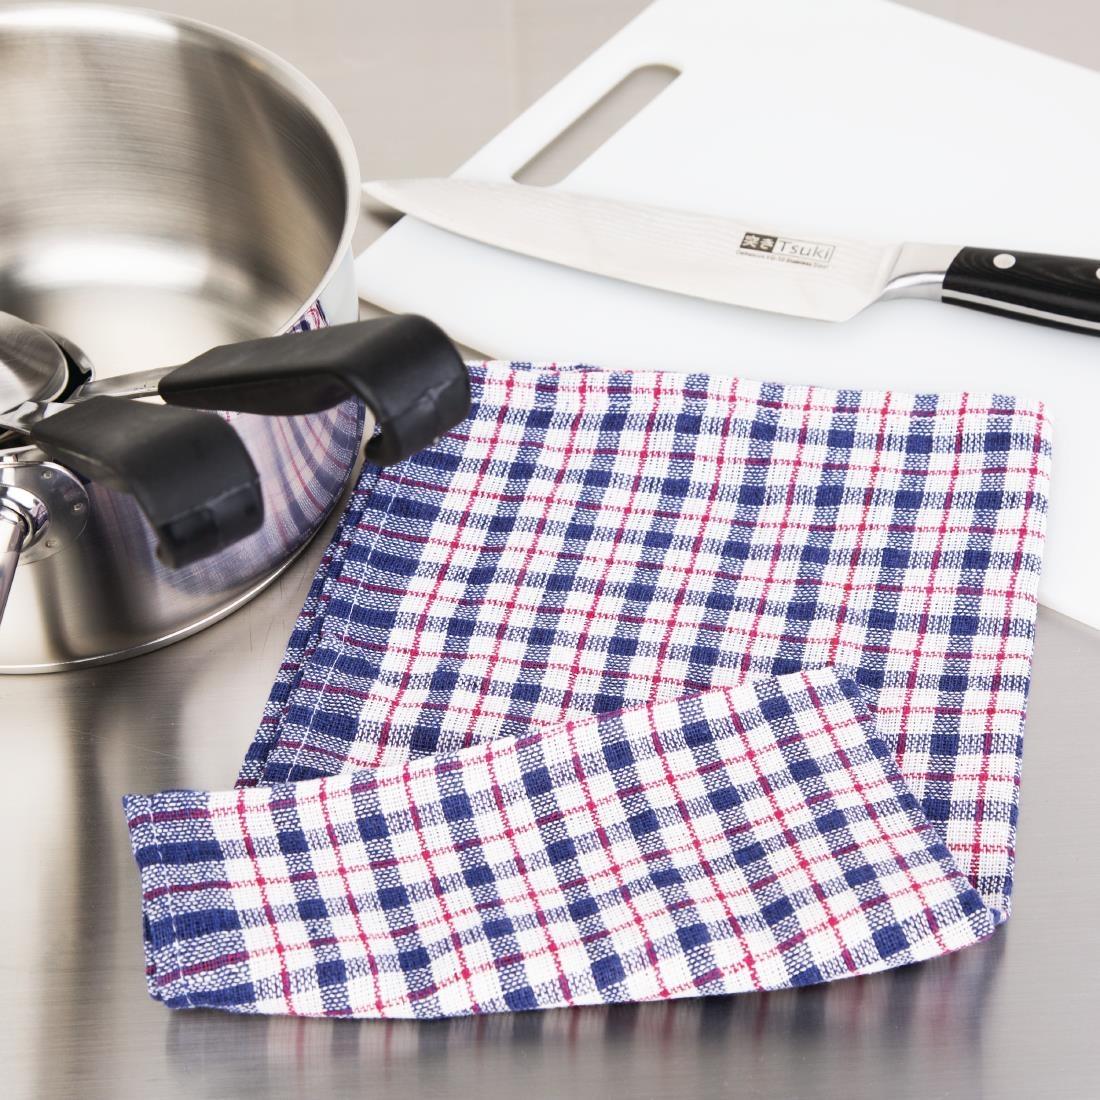 Nisbets Essentials Tea Towels (Pack of 5) - DA059  - 3